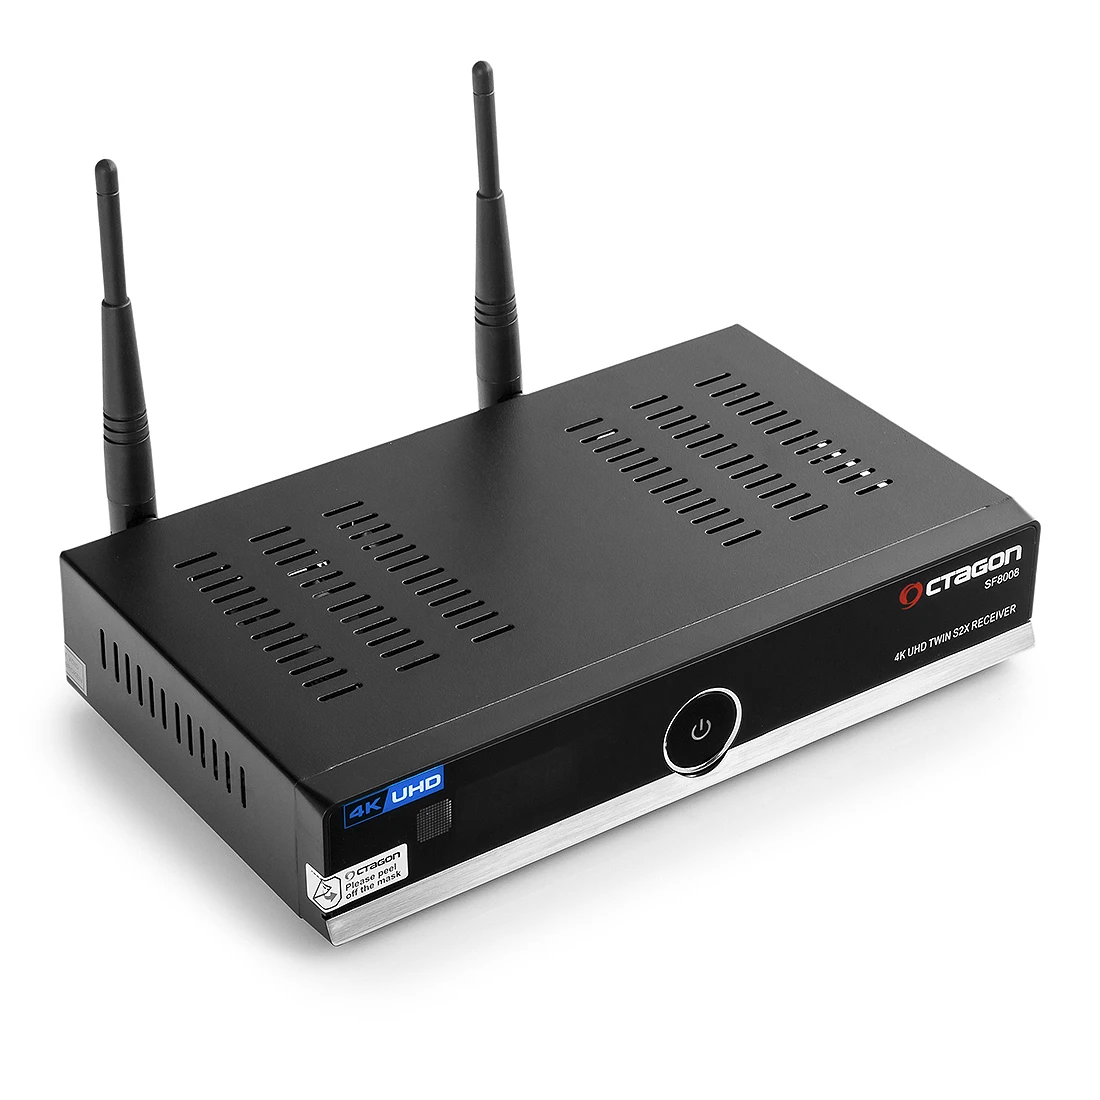 Viark Sat 4K UHD H.265 2160p DVB-S2X MS Receiver LAN Wi-Fi Black